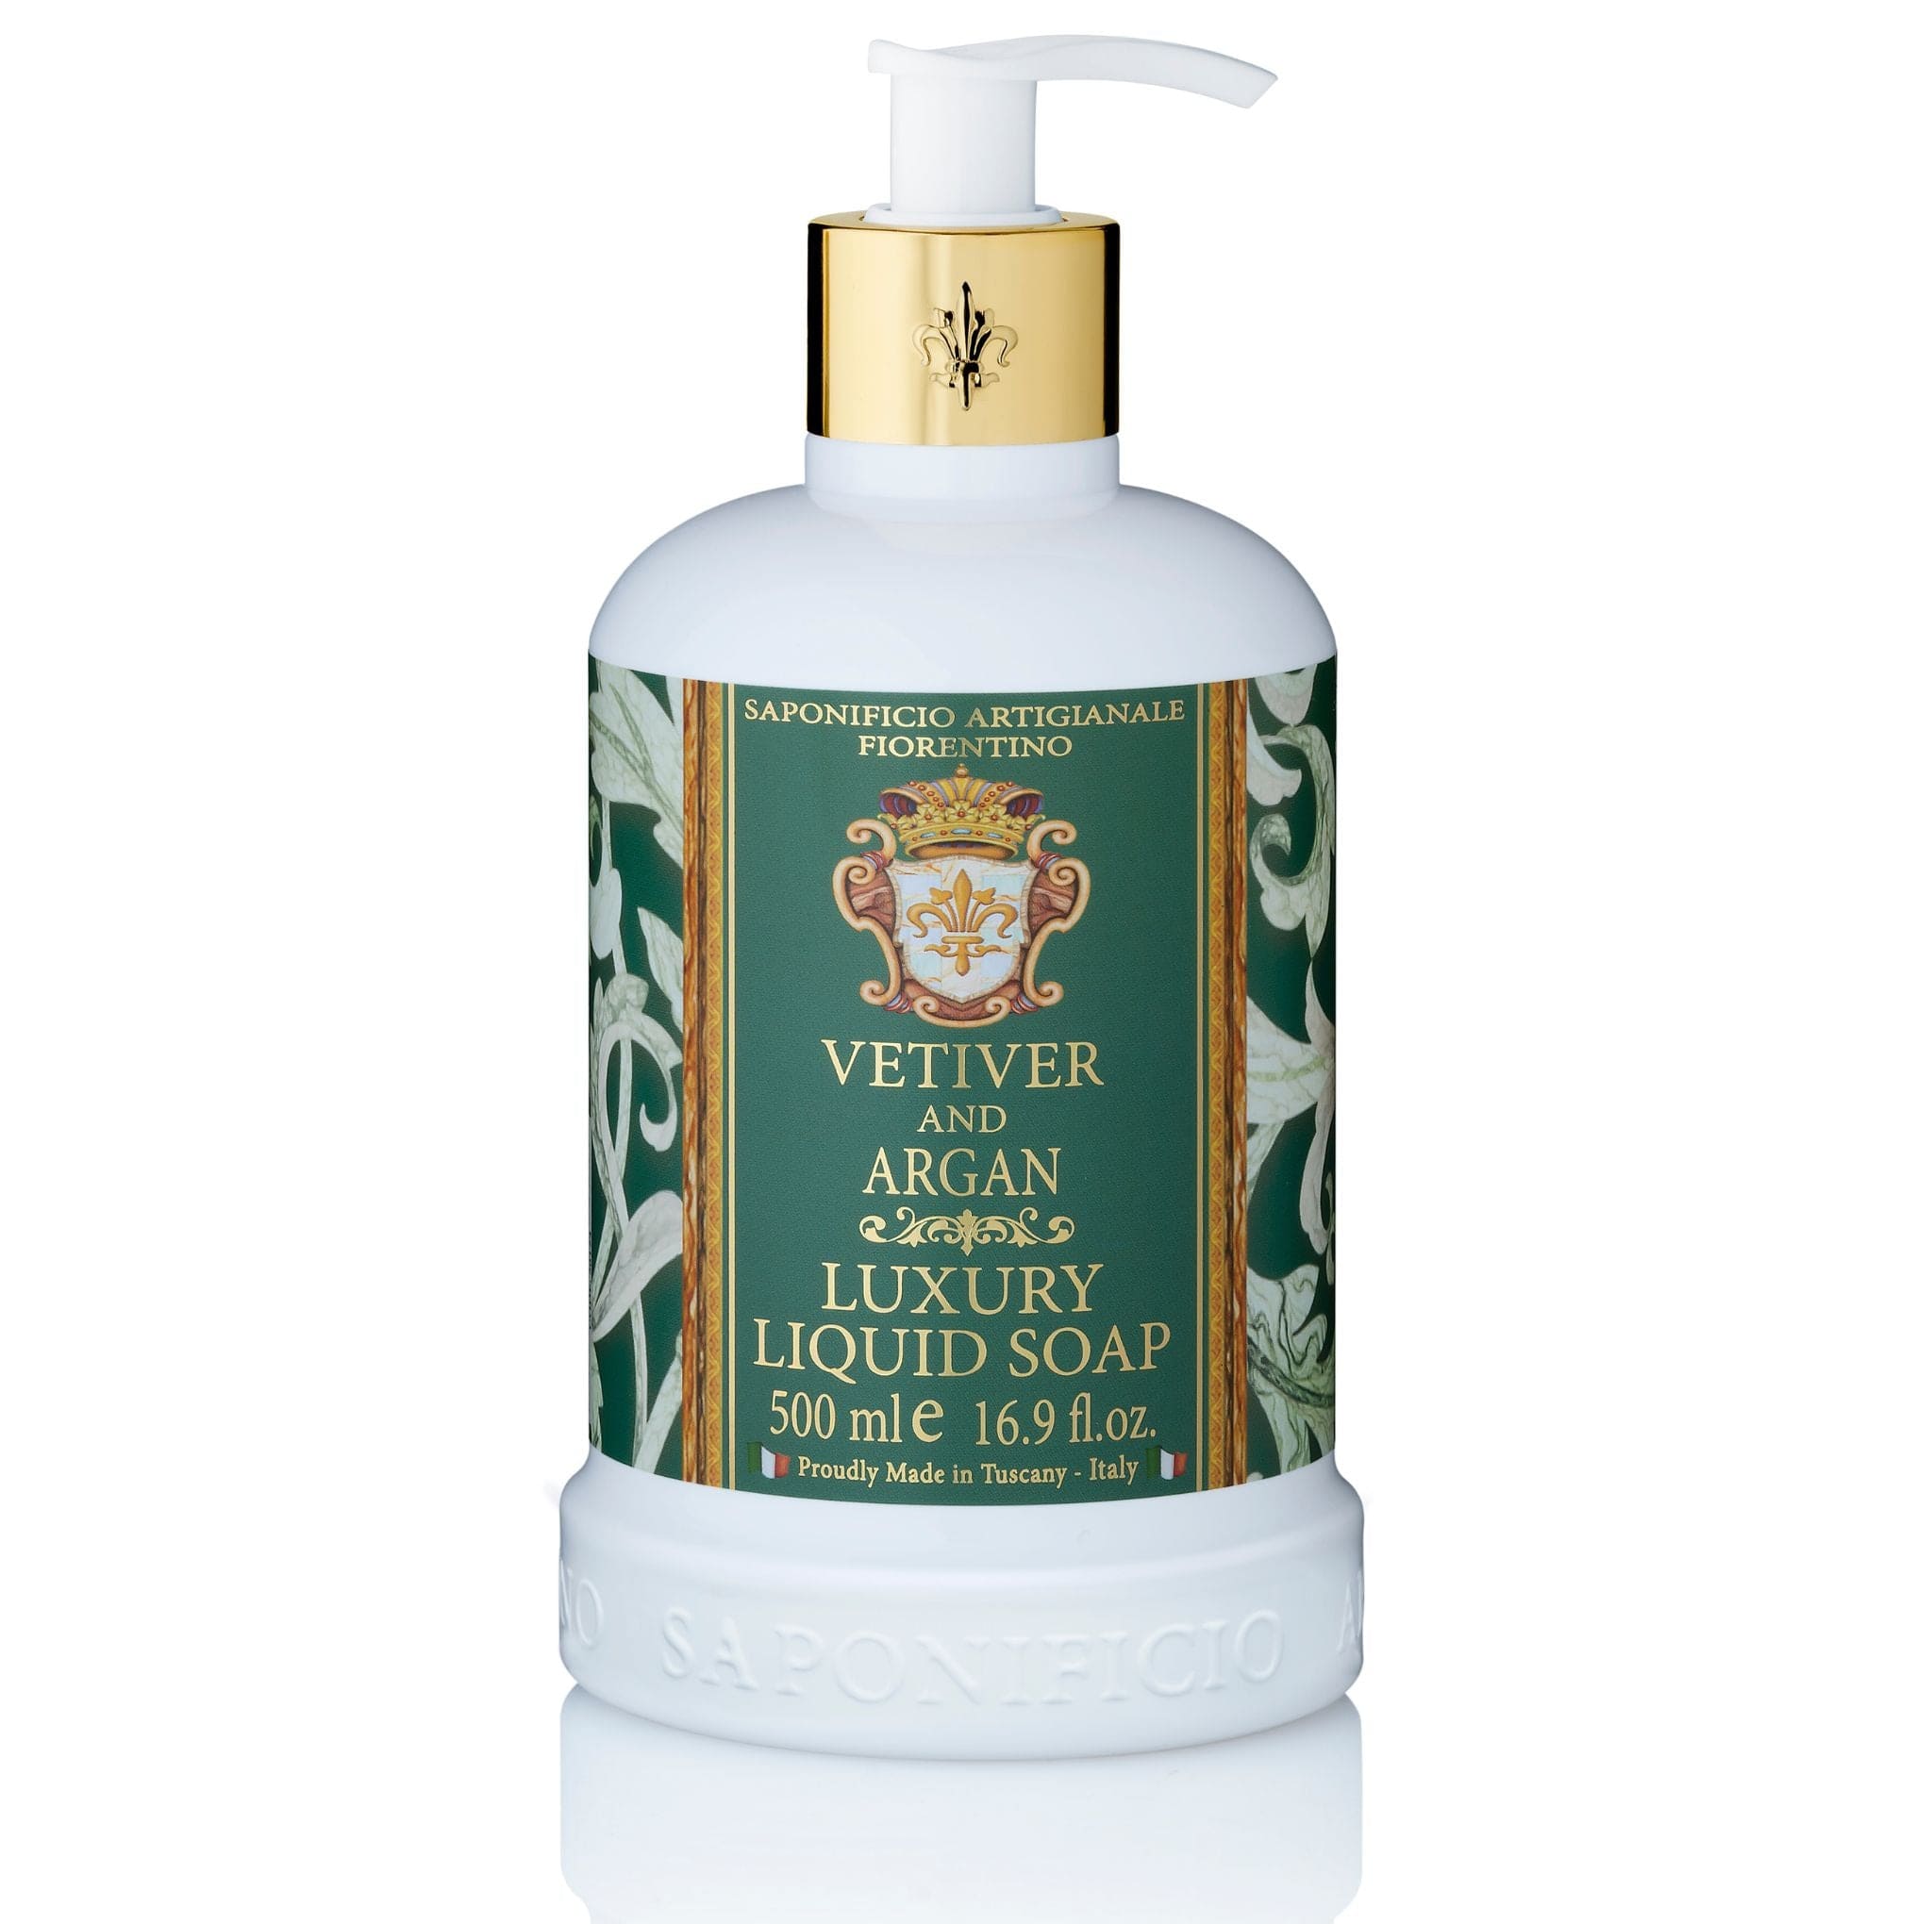 Saponificio Artigianale Fiorentino Liquid Hand Soap Bundle Set Vetiver & Argan Liquid Soap + Bodywash + 3x125g Bar Soap Brand